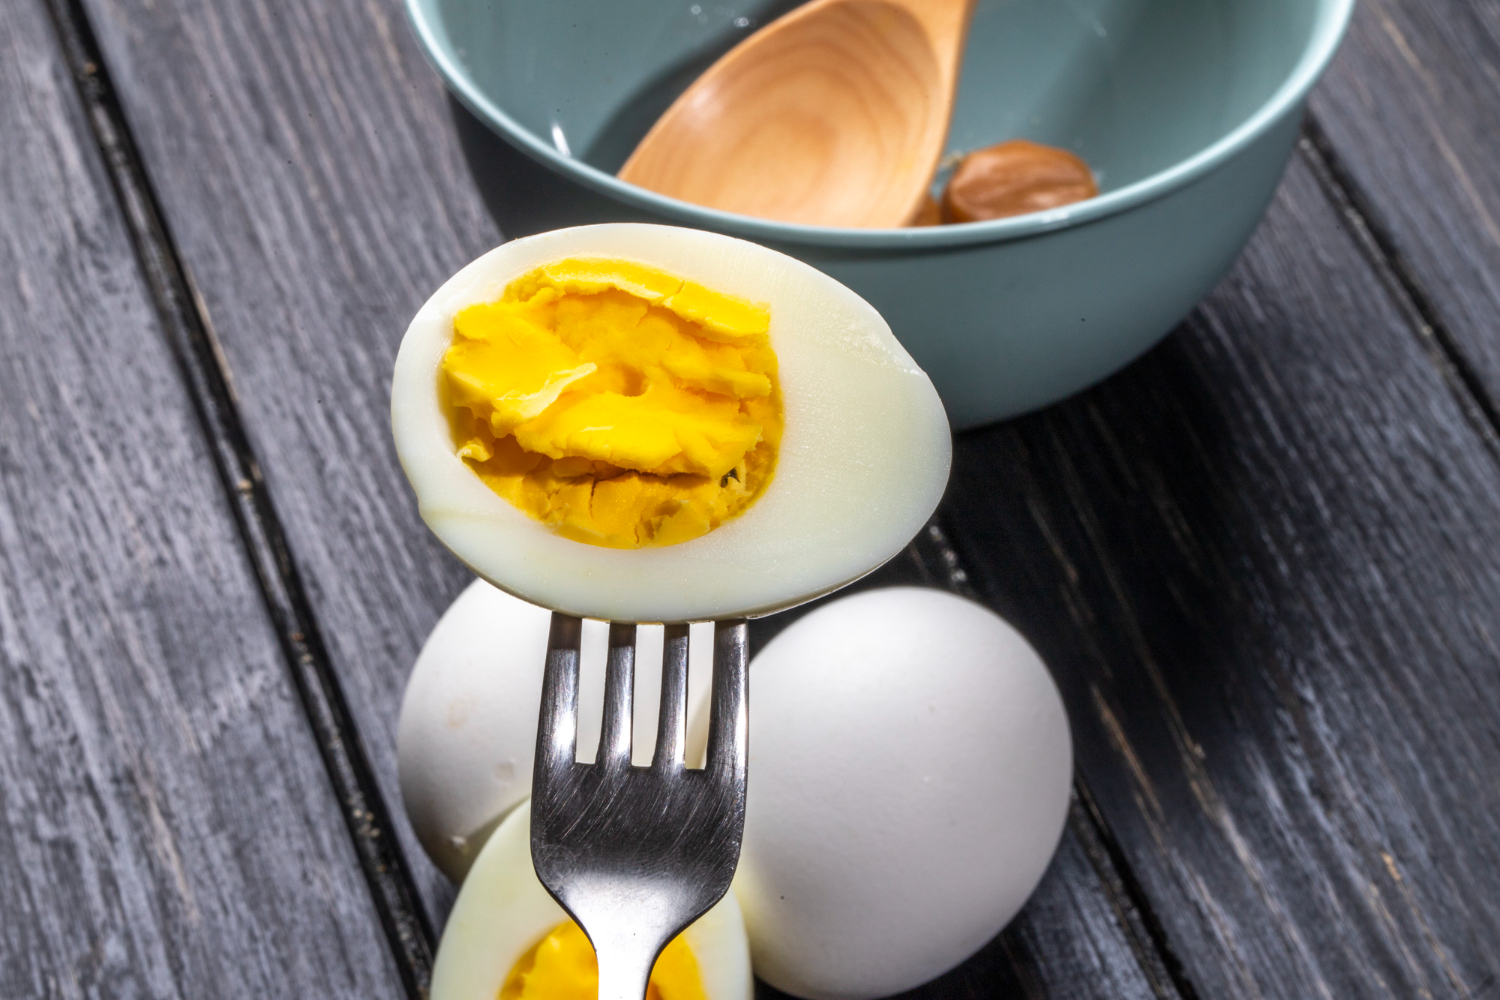 เอาใจคนรักไข่ กับเคล็ดลับในการต้มไข่ที่น่าทึ่ง